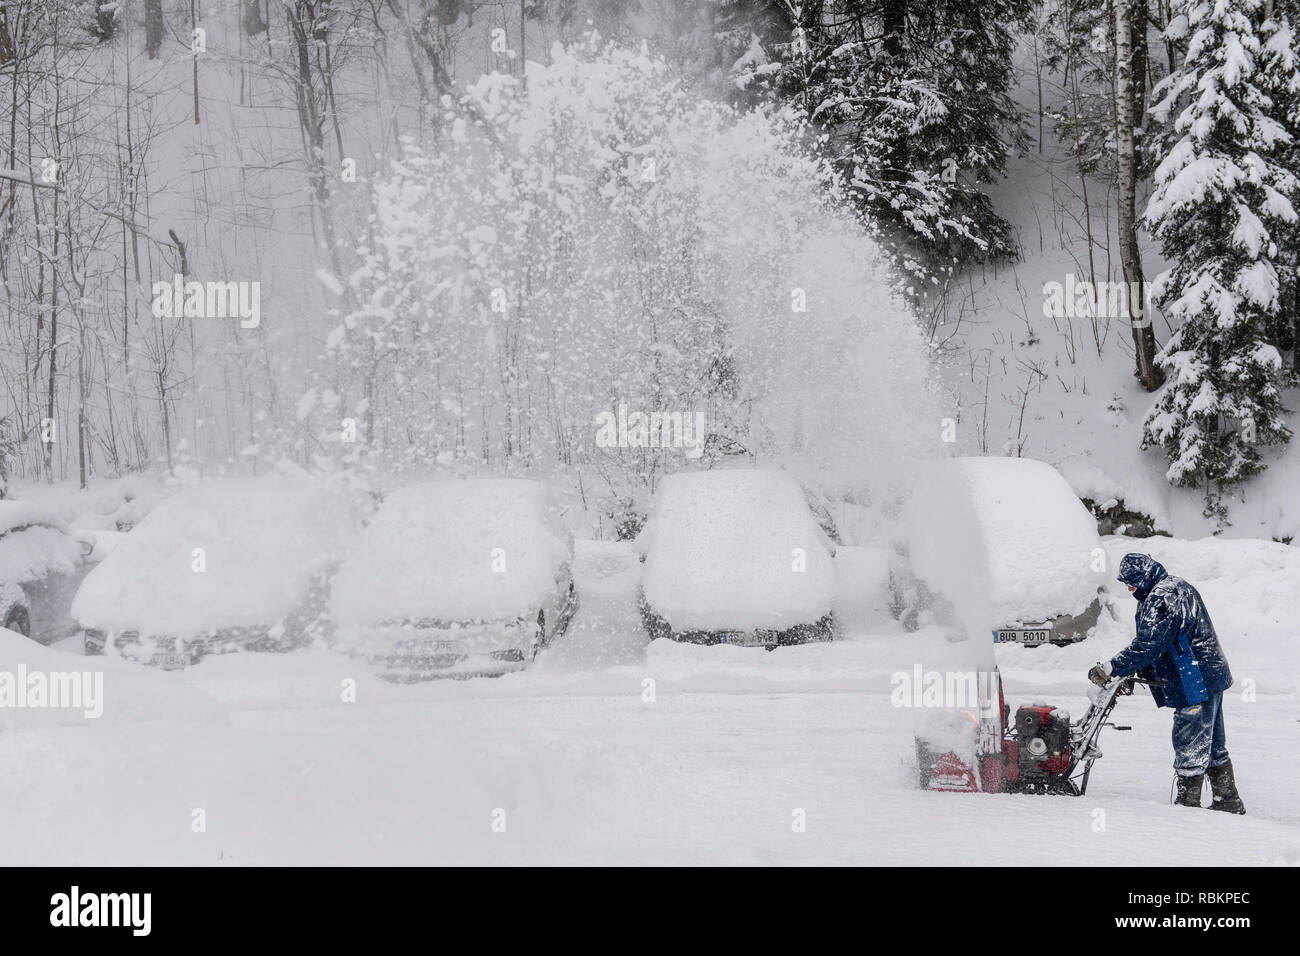 Velka Upa, Monts des Géants. 10 janvier, 2019. Un homme avec une fraise à neige nettoie une route au cours d'une forte chute de neige dans la région de Velka Upa, Monts des Géants, République tchèque, jeudi, 10 janvier 2019. Photo : CTK/Tanecek Photo/Alamy Live News Banque D'Images